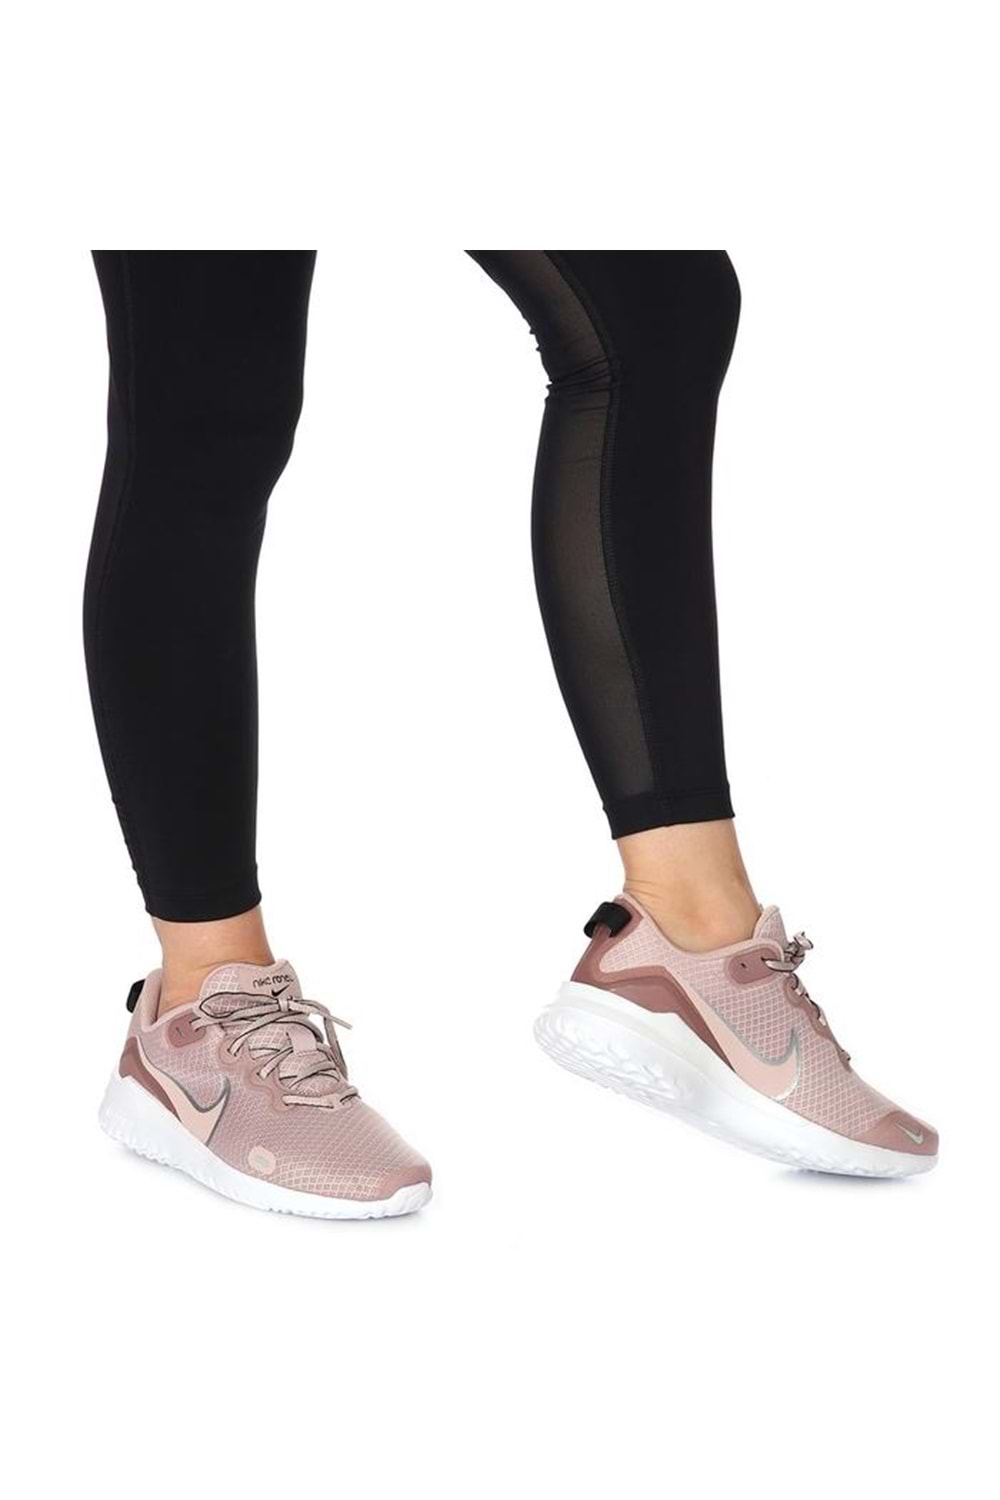 Nike Renew Arena 2 Kadın Koşu&Yürüyüş Ayakkabısı CD0314-200